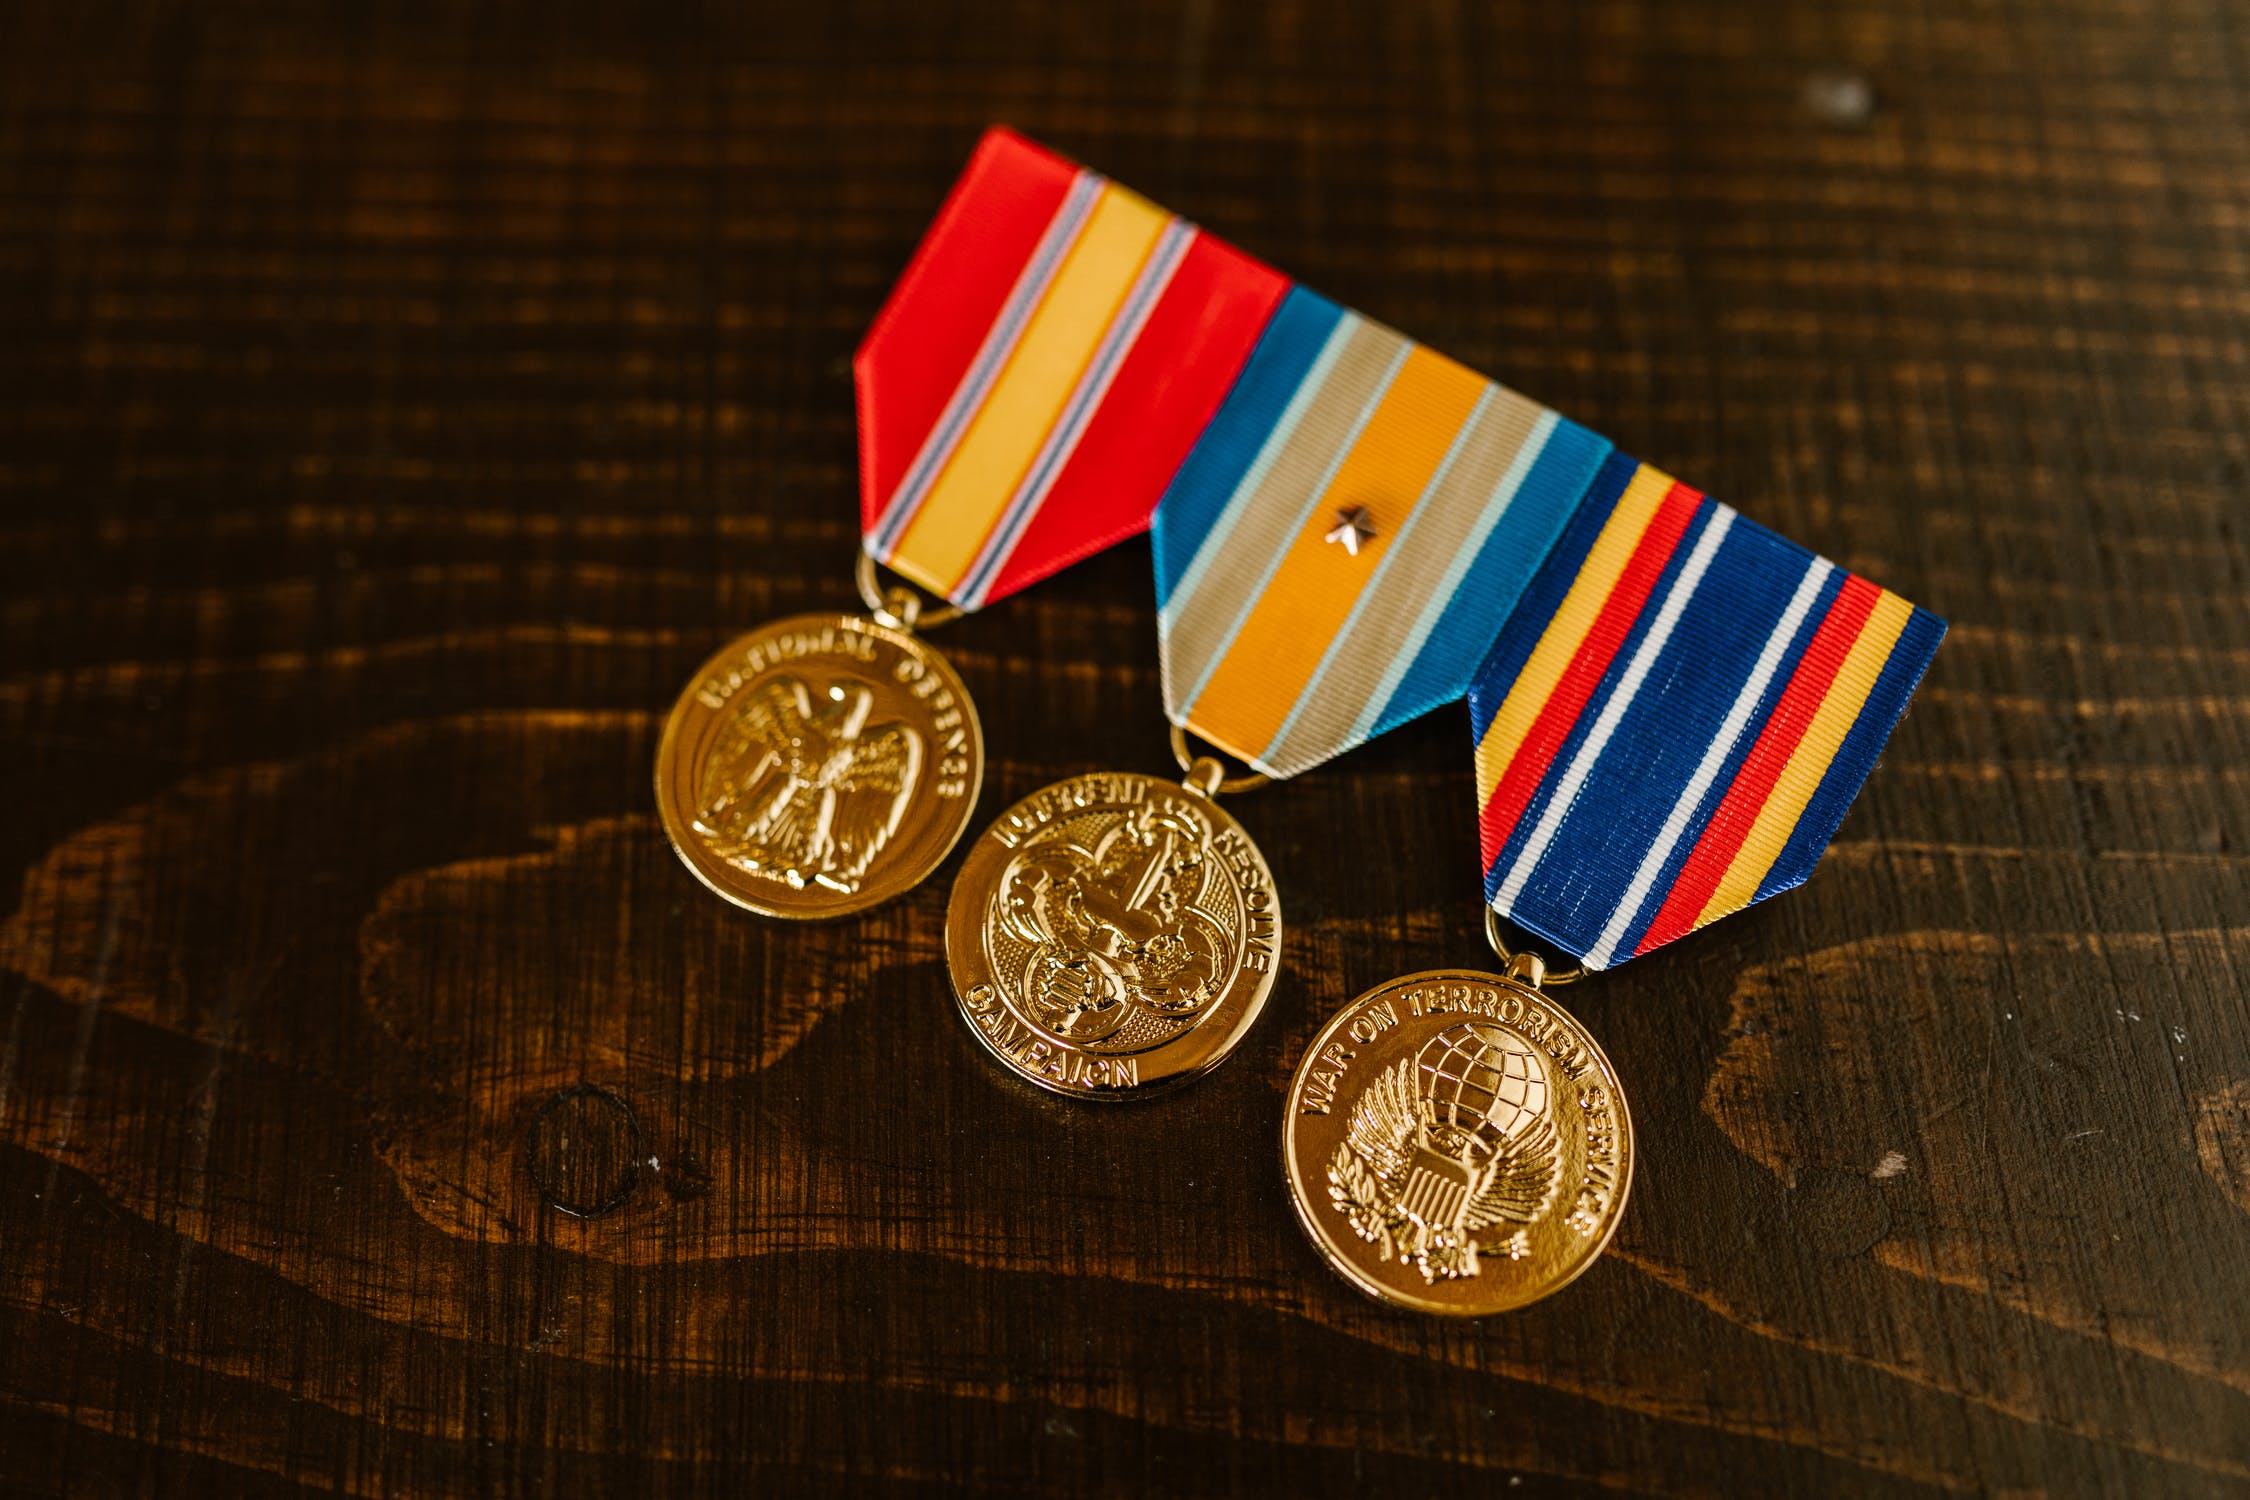 Le maire a remis à Mme Farlow une médaille pour sa bravoure | Source : Pexels